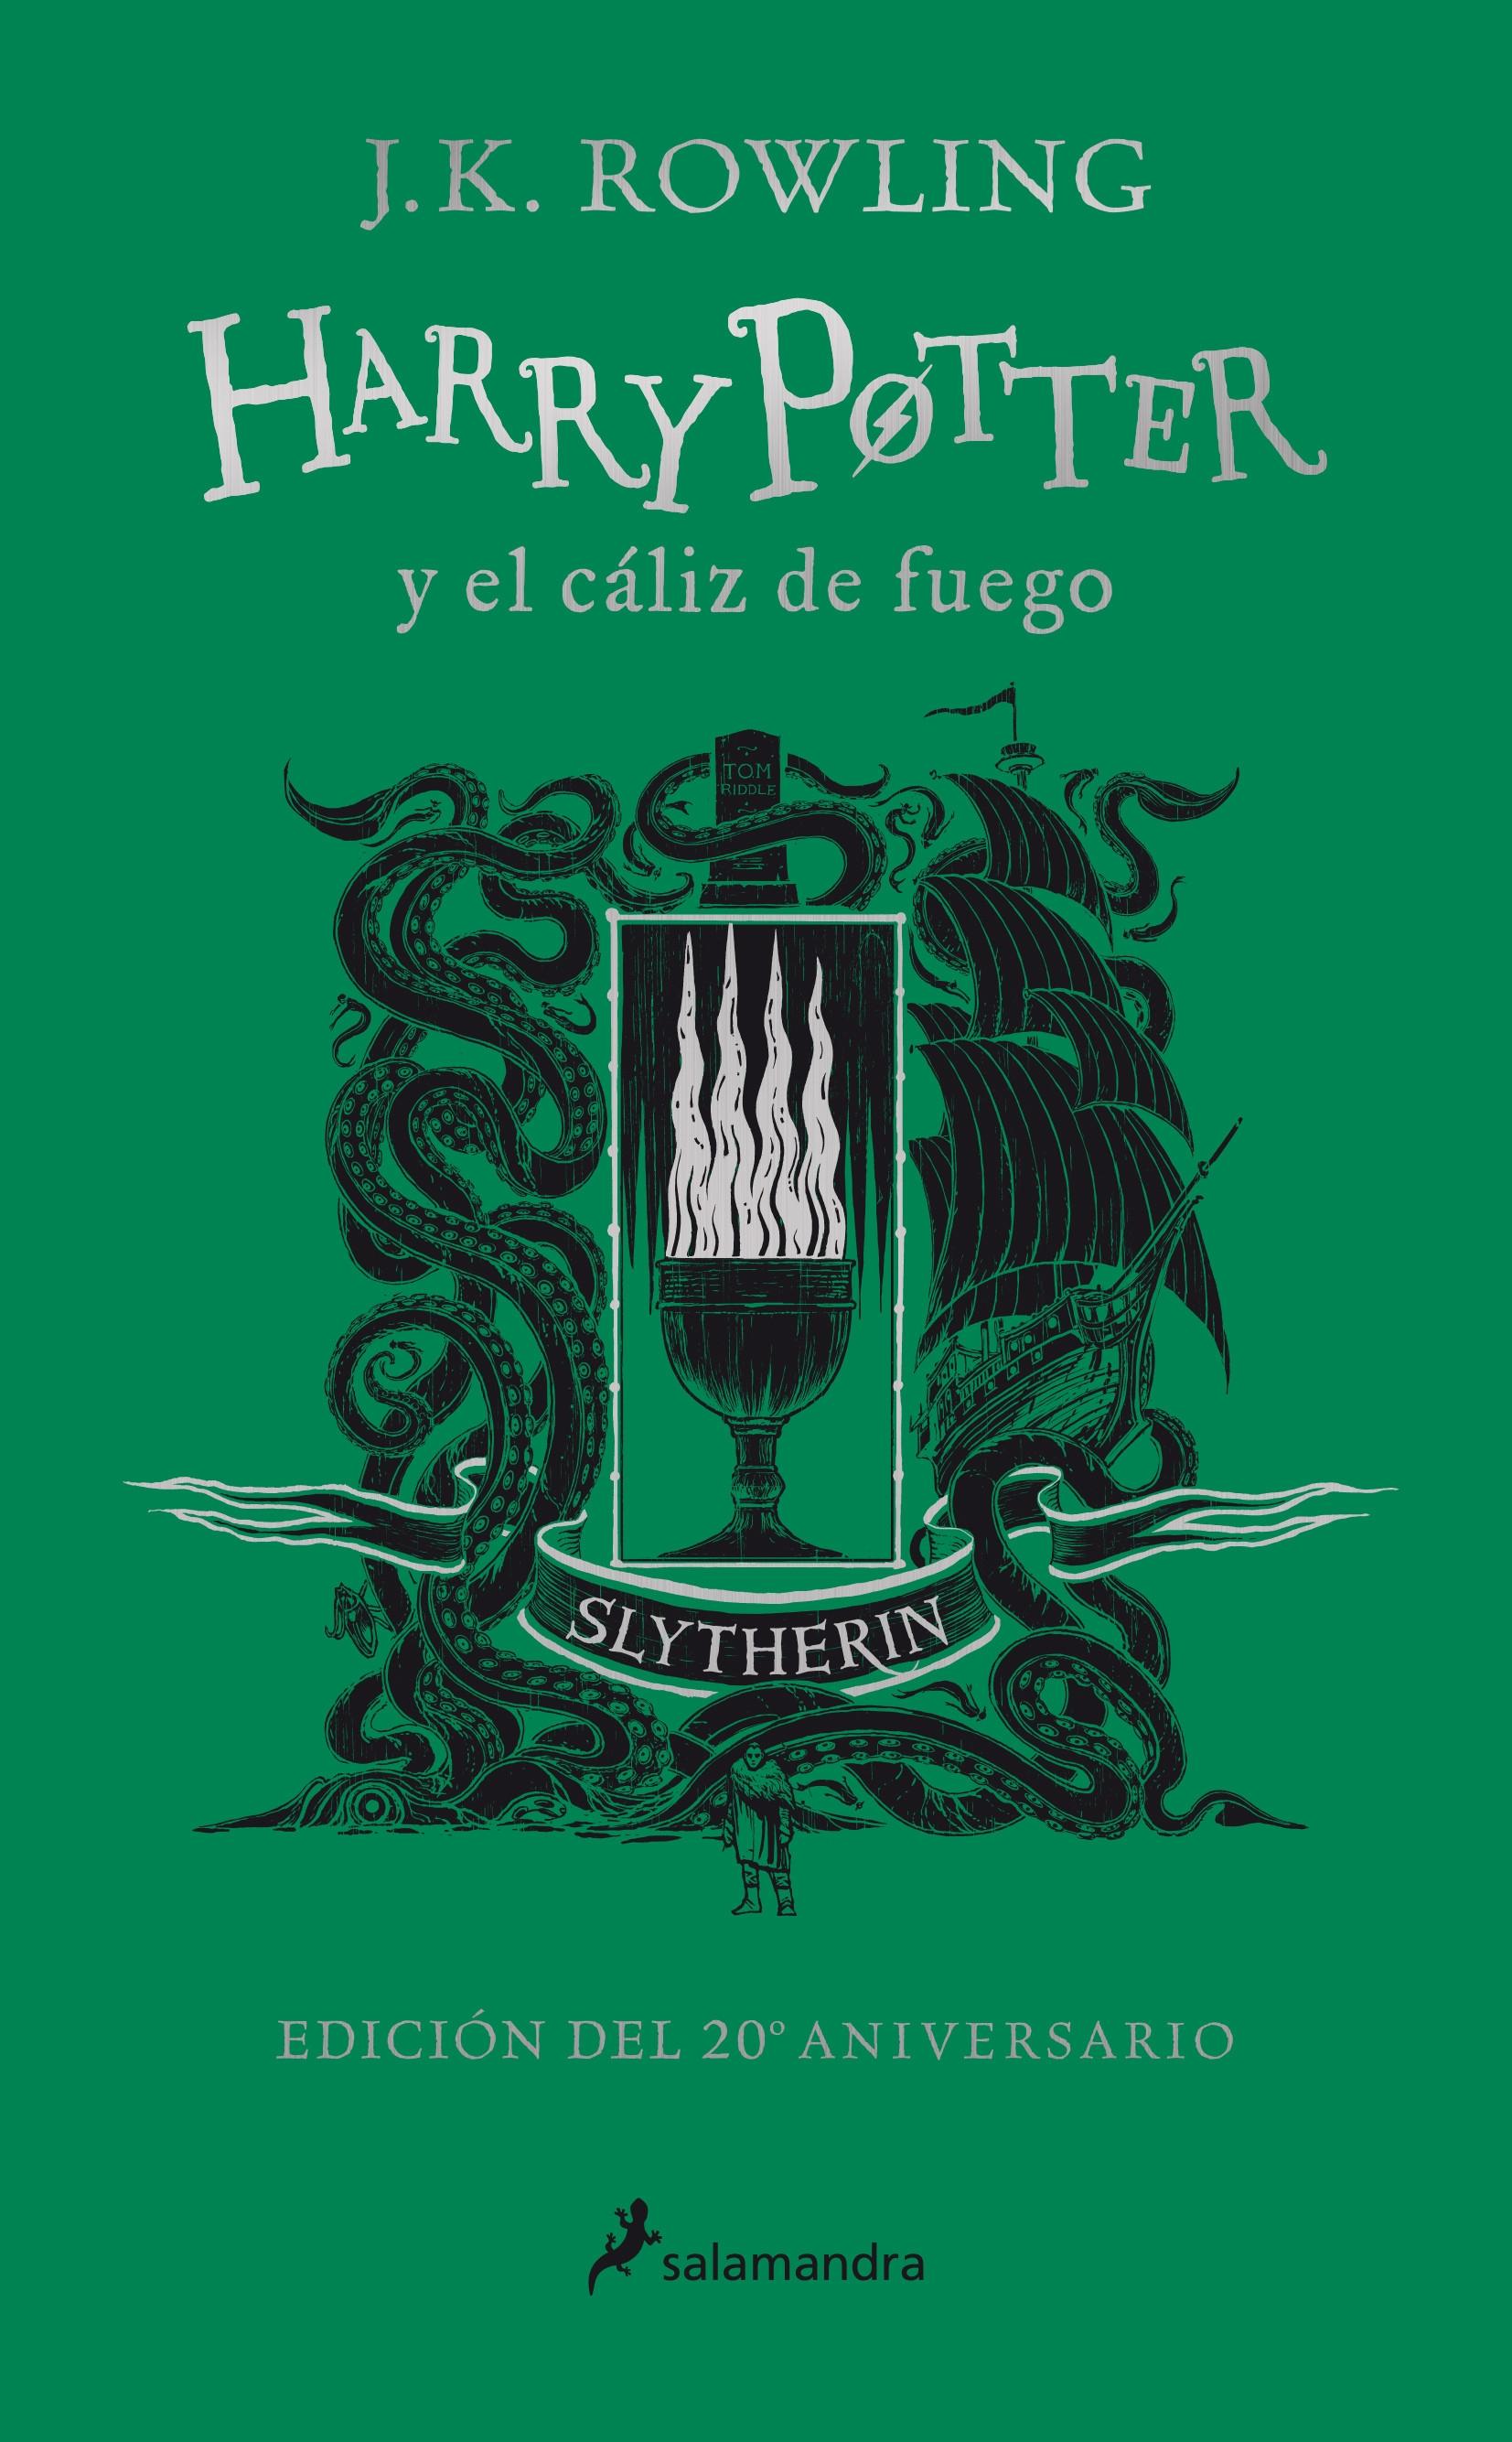 Harry Potter y el cáliz de fuego: Slytherin (Harry Potter - 4) "Orgullo - Ambición - Astucia (Edición del 20 Aniversario)"